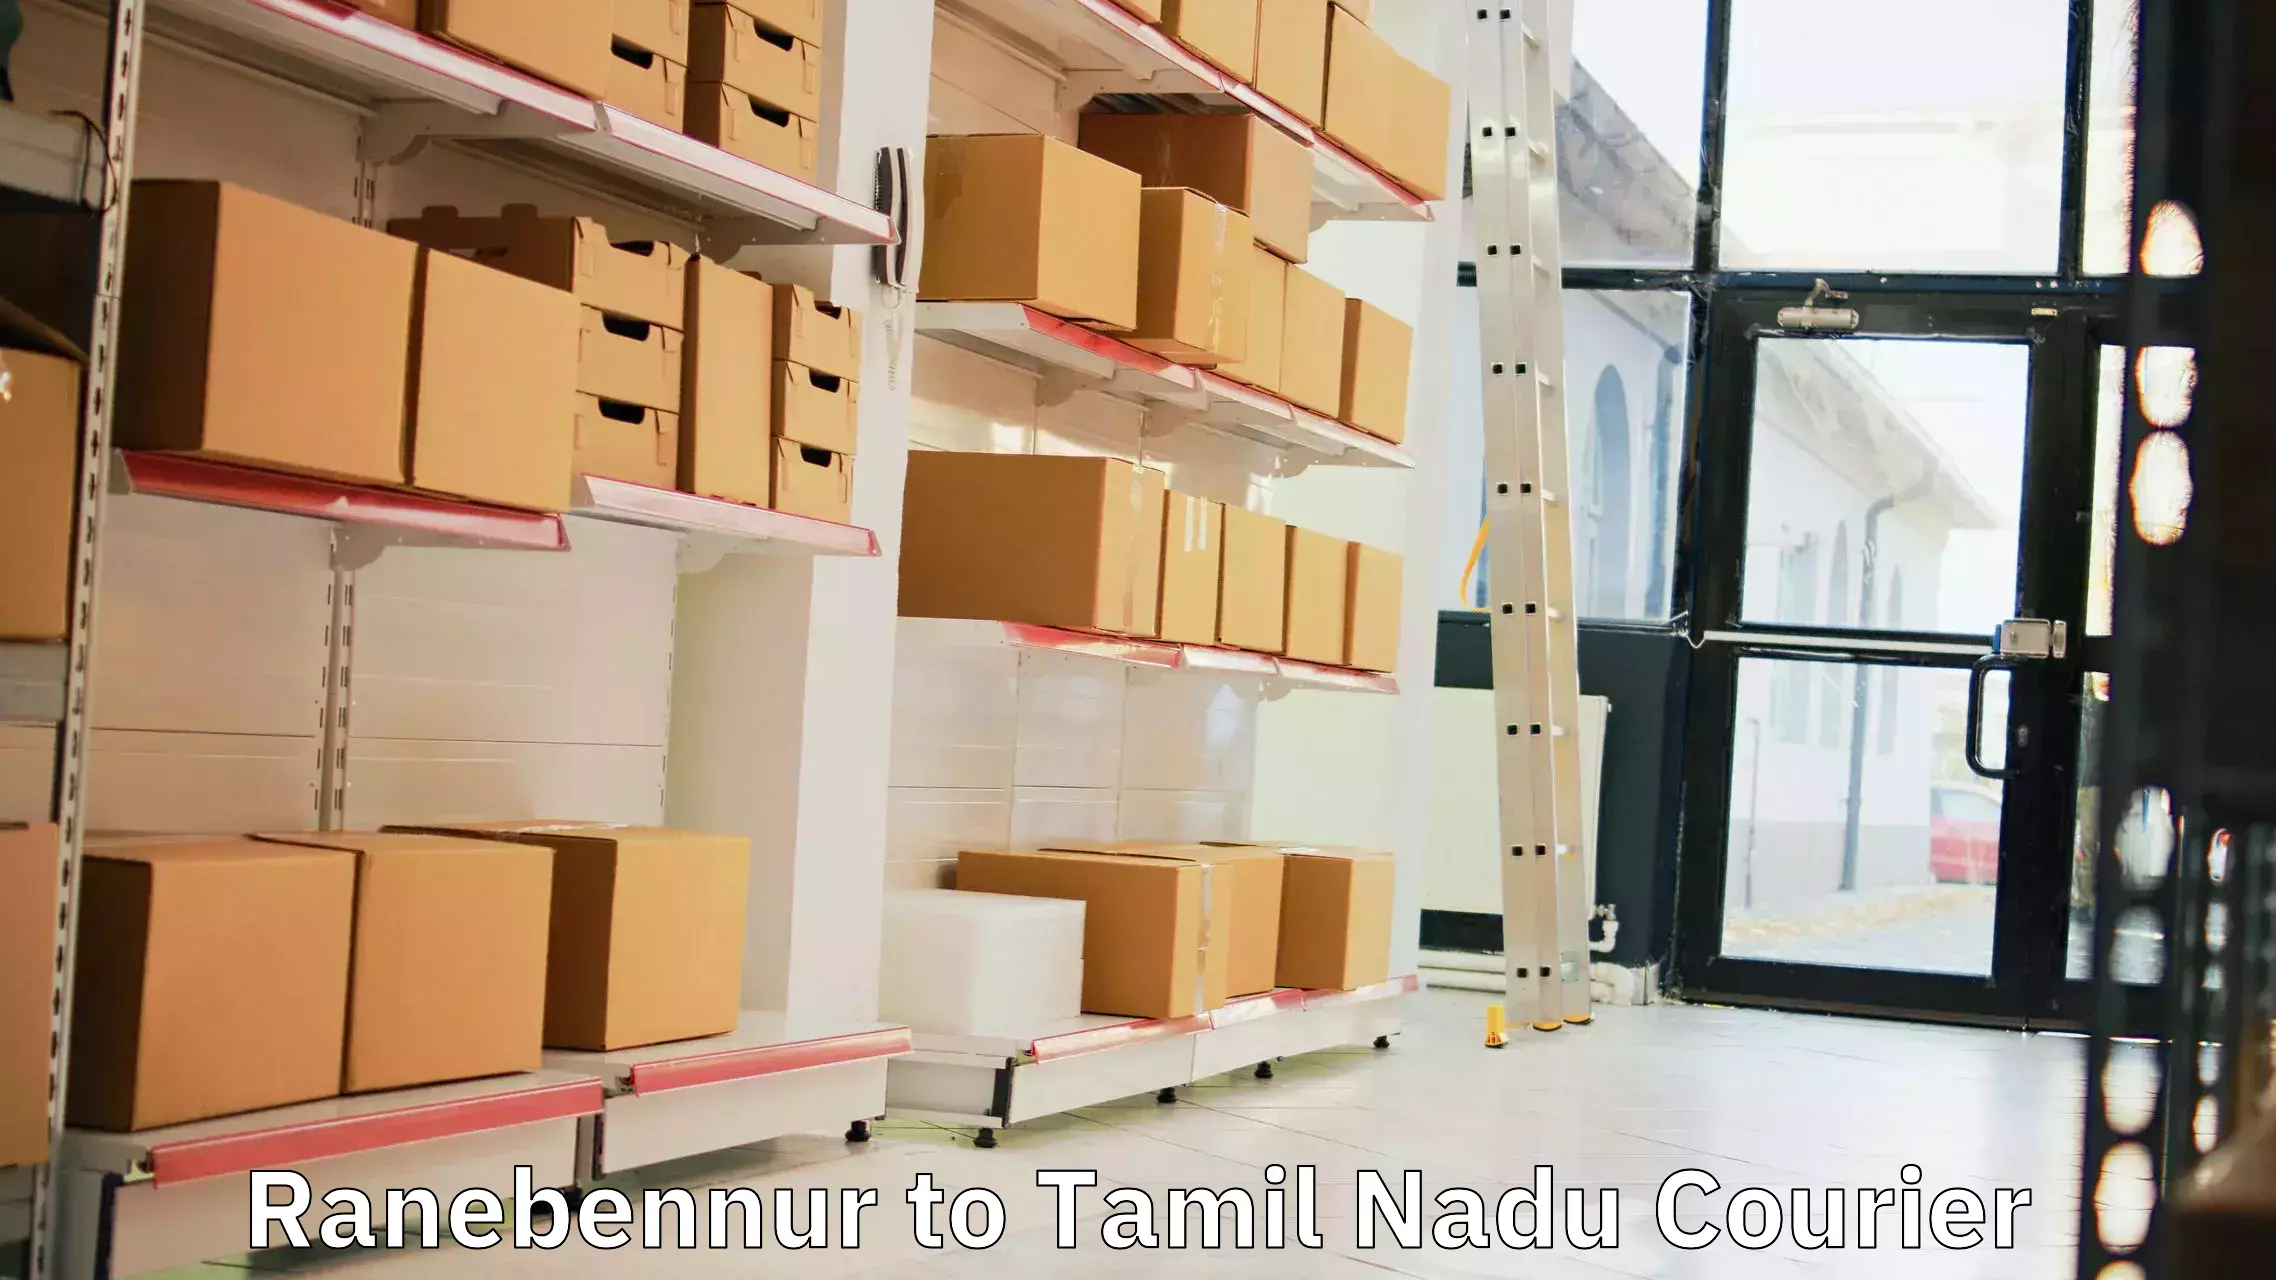 Courier service booking Ranebennur to Tamil Nadu